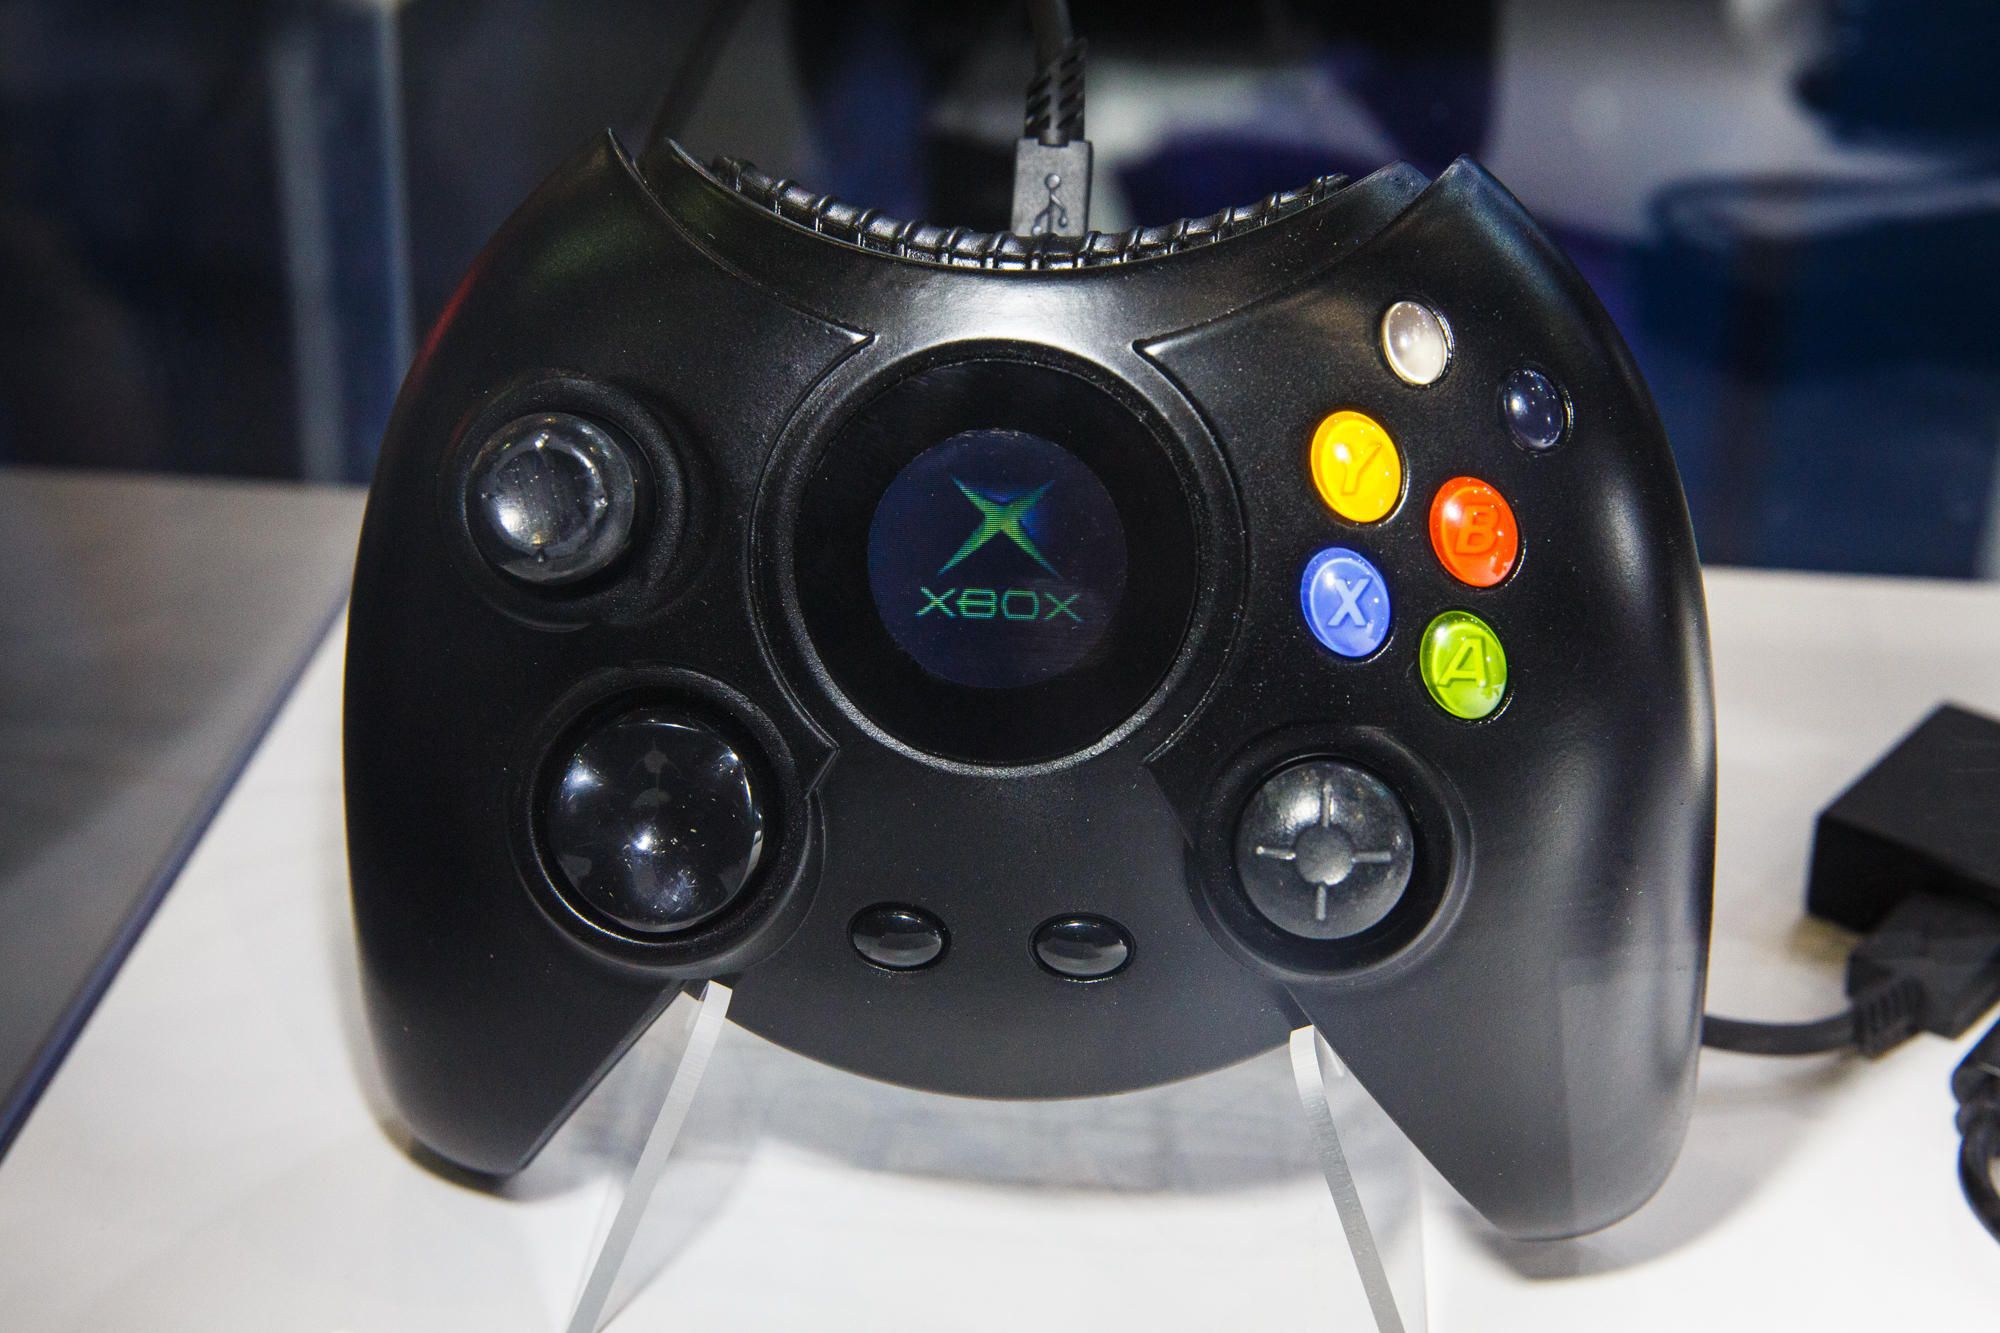 קנה בקר Xbox מקורי על לוח מודעות בישראל נוסטלגיה למשחקי וינטג'